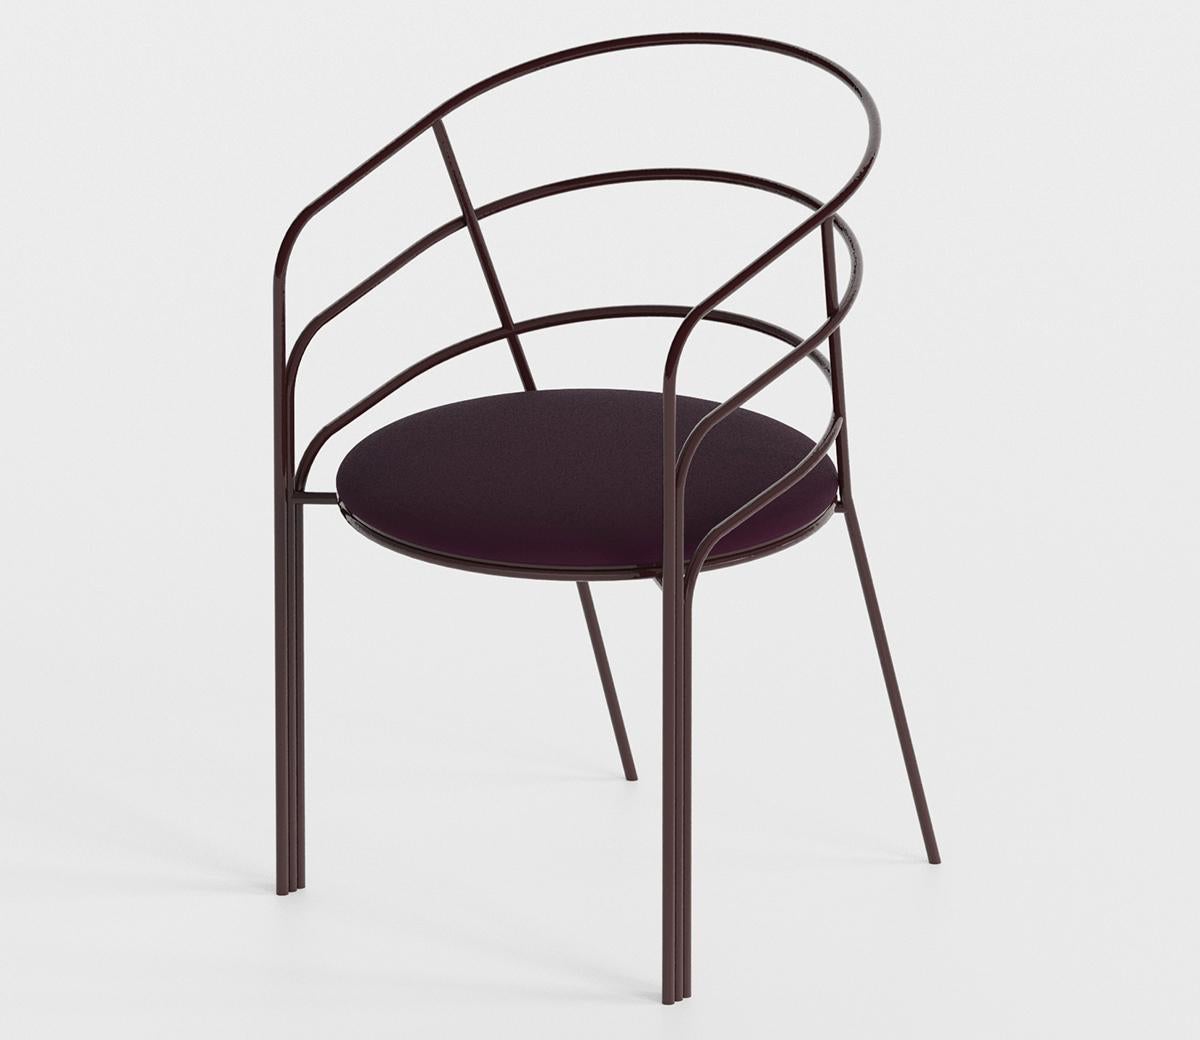 La chaise DeMille s'inspire de l'architecture moderne et épurée de l'Eastside Modern de Los Angeles. Châssis en acier inoxydable avec revêtement en poudre et coussins amovibles recouverts d'un tissu d'extérieur, cette chaise est parfaite à